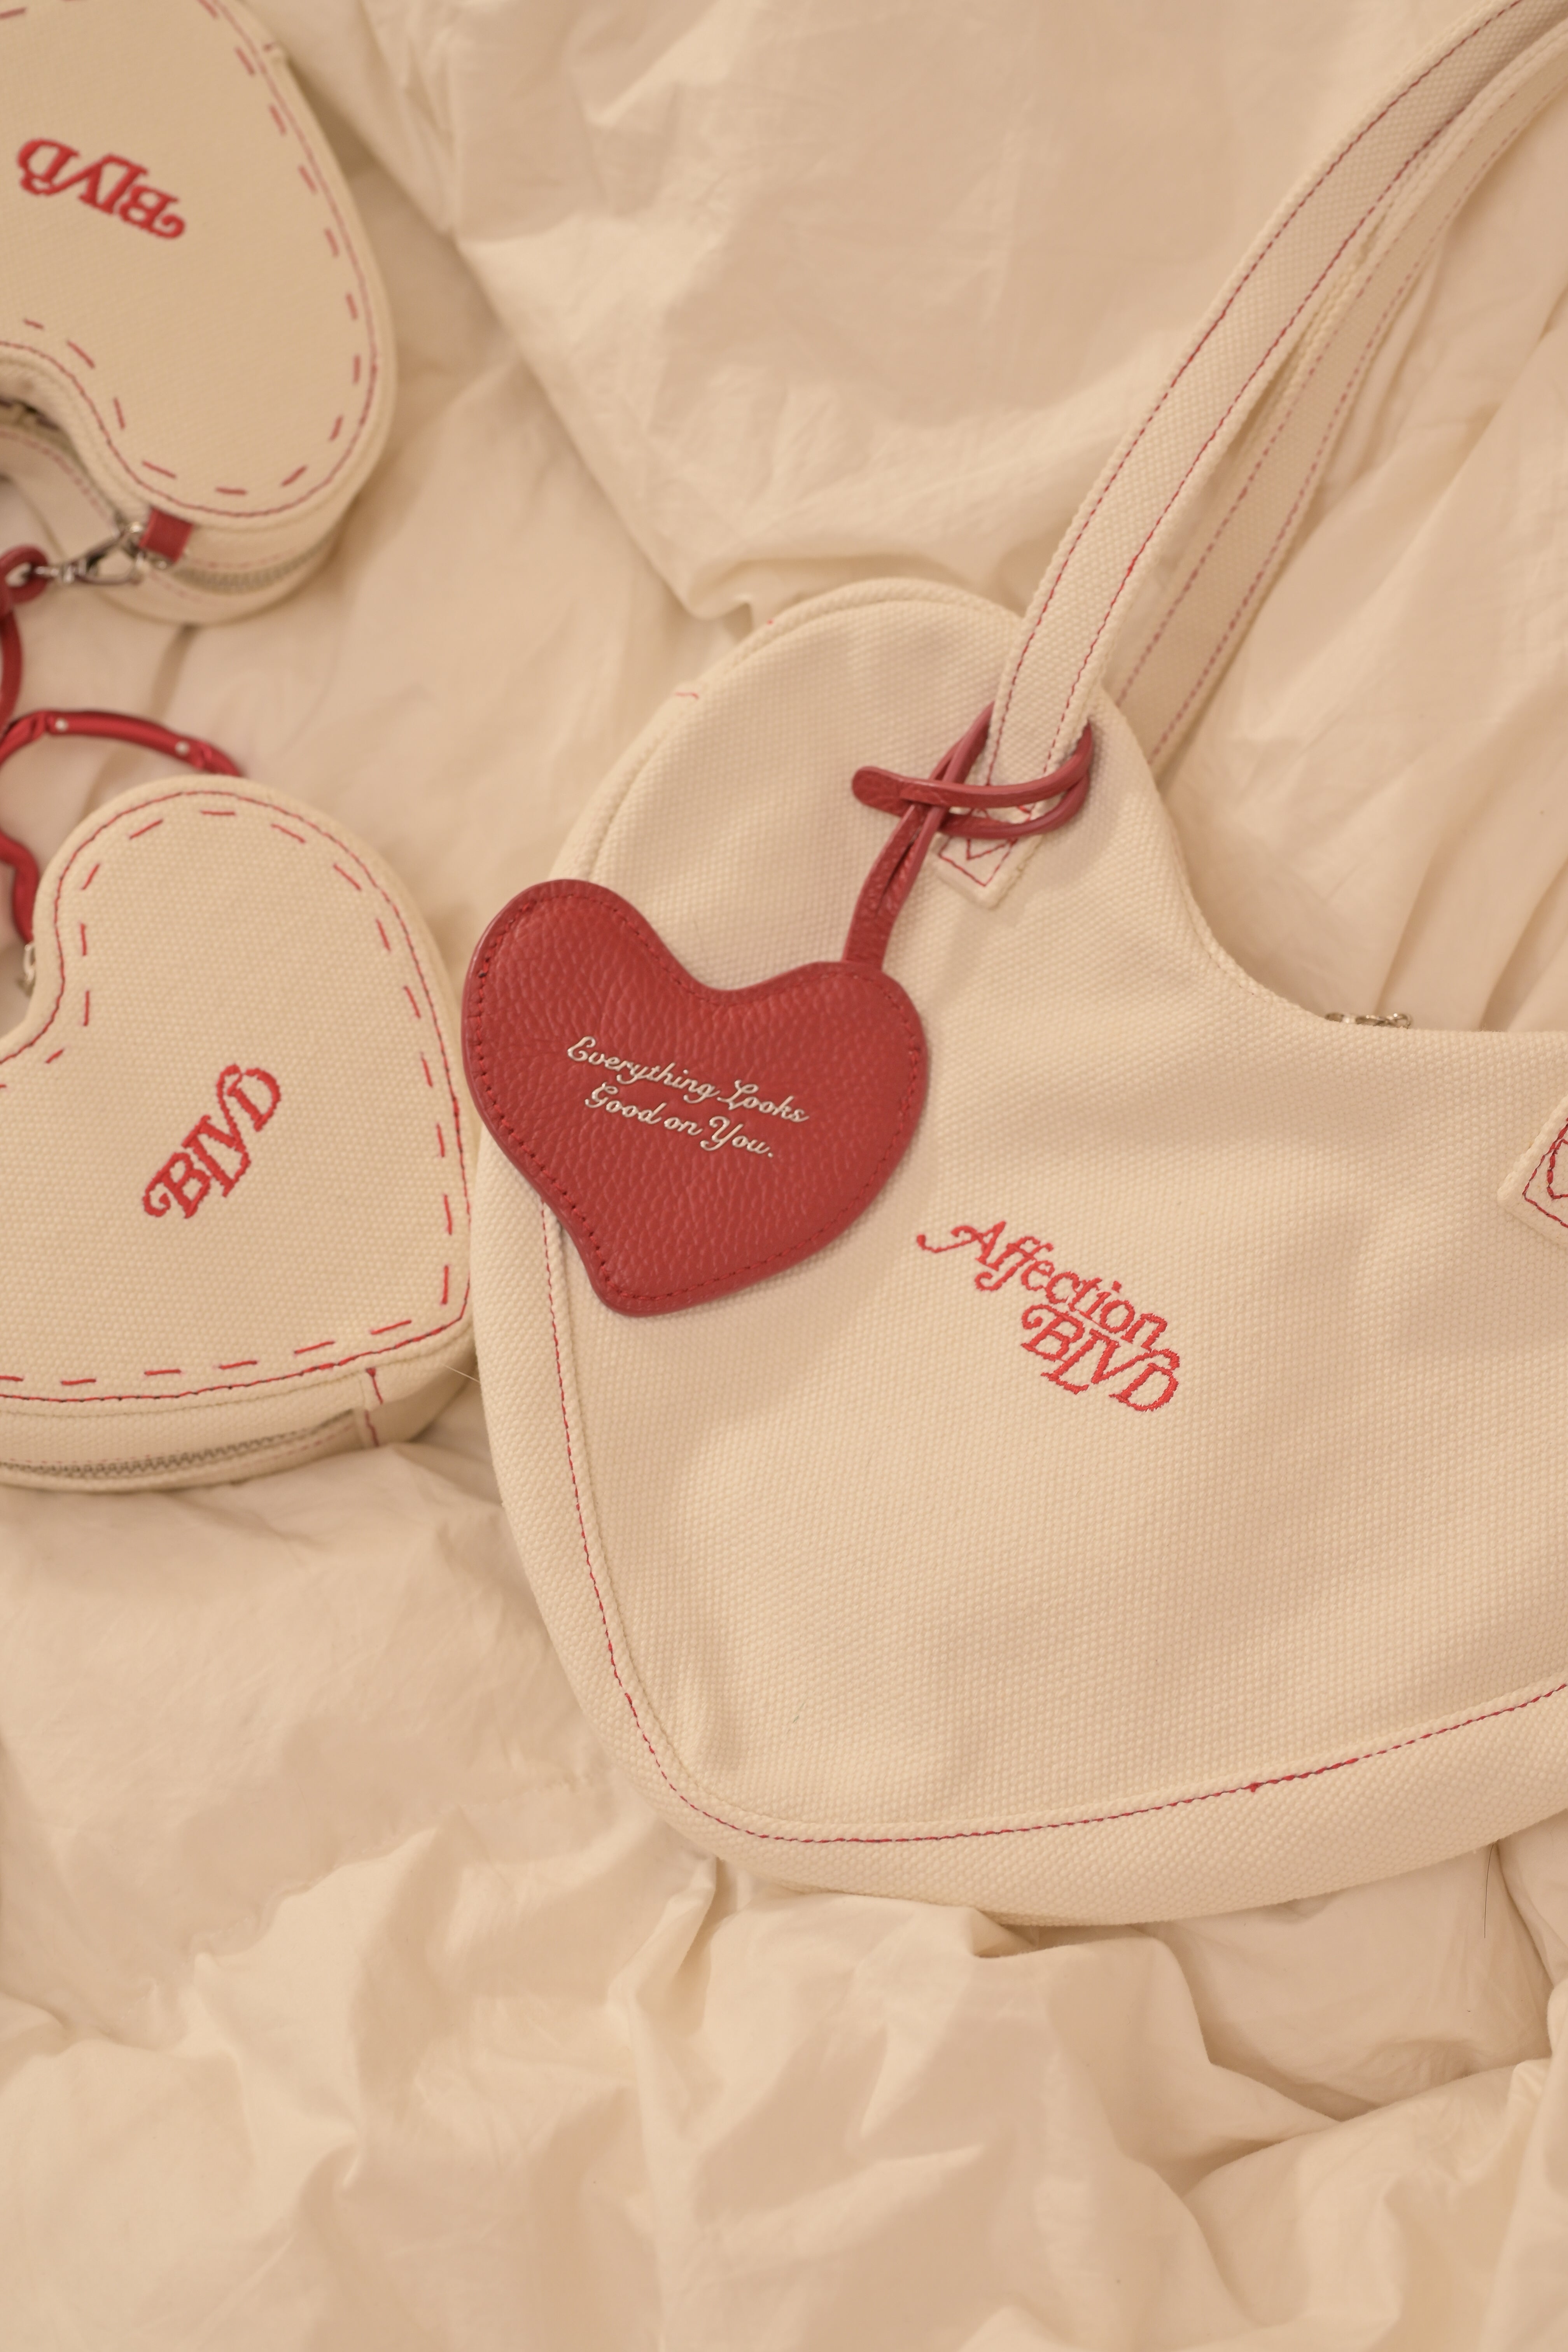 Heart Bag - The "Little Heartbreaker"